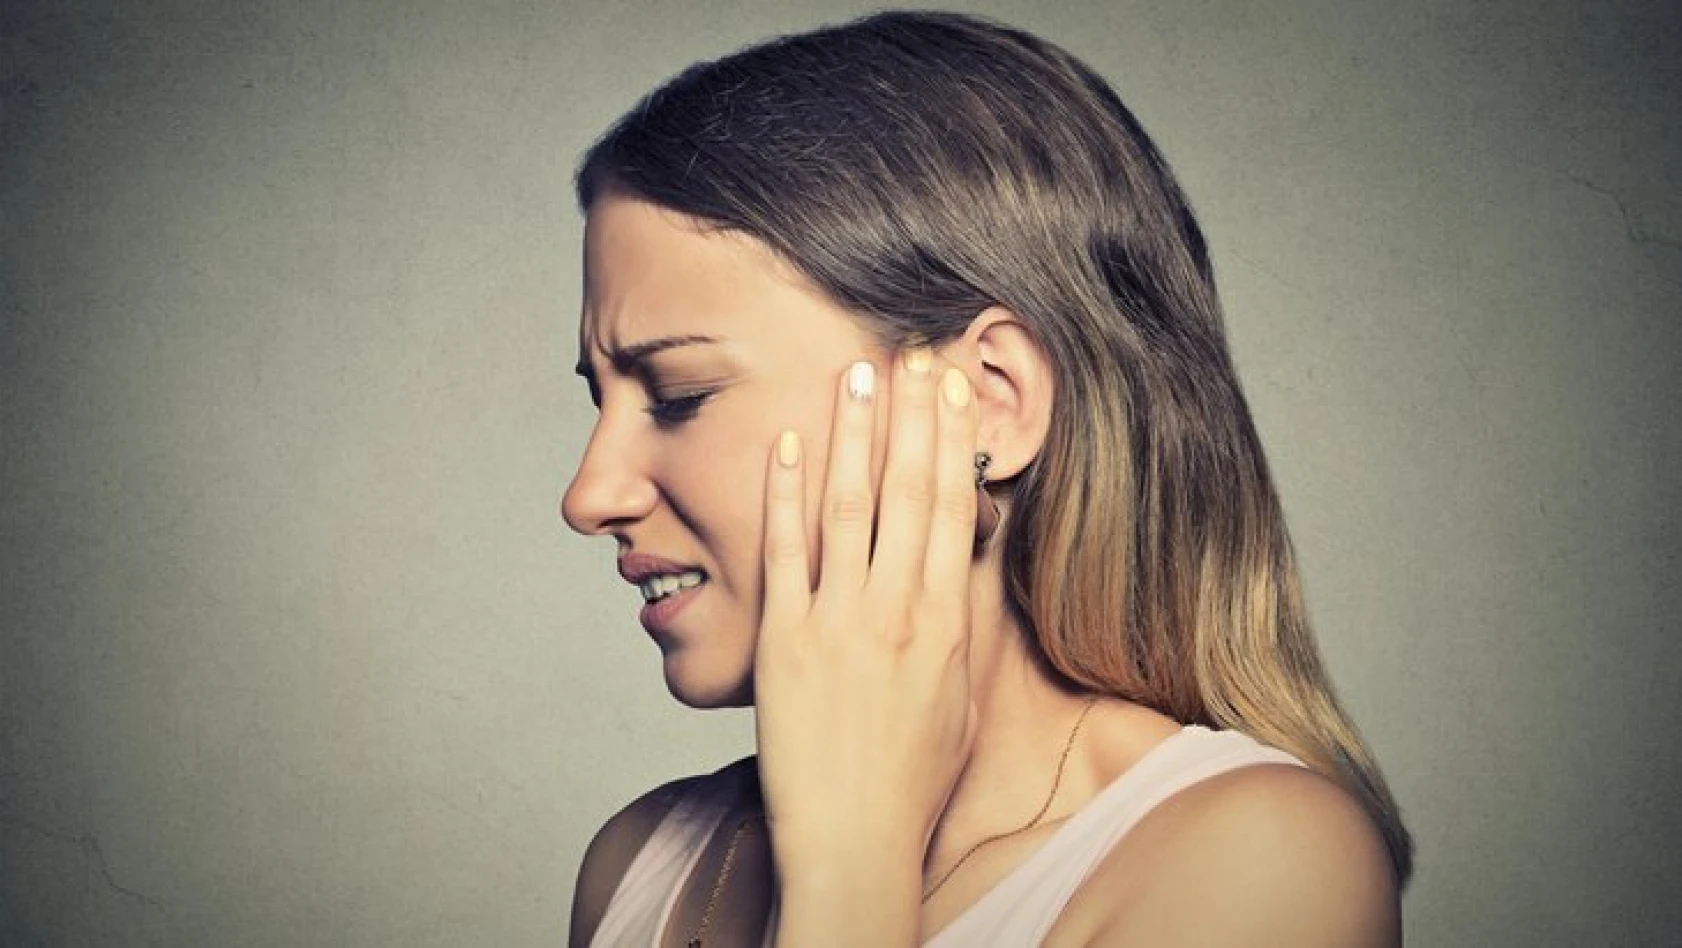 Kulak ağrısının 6 önemli nedeni